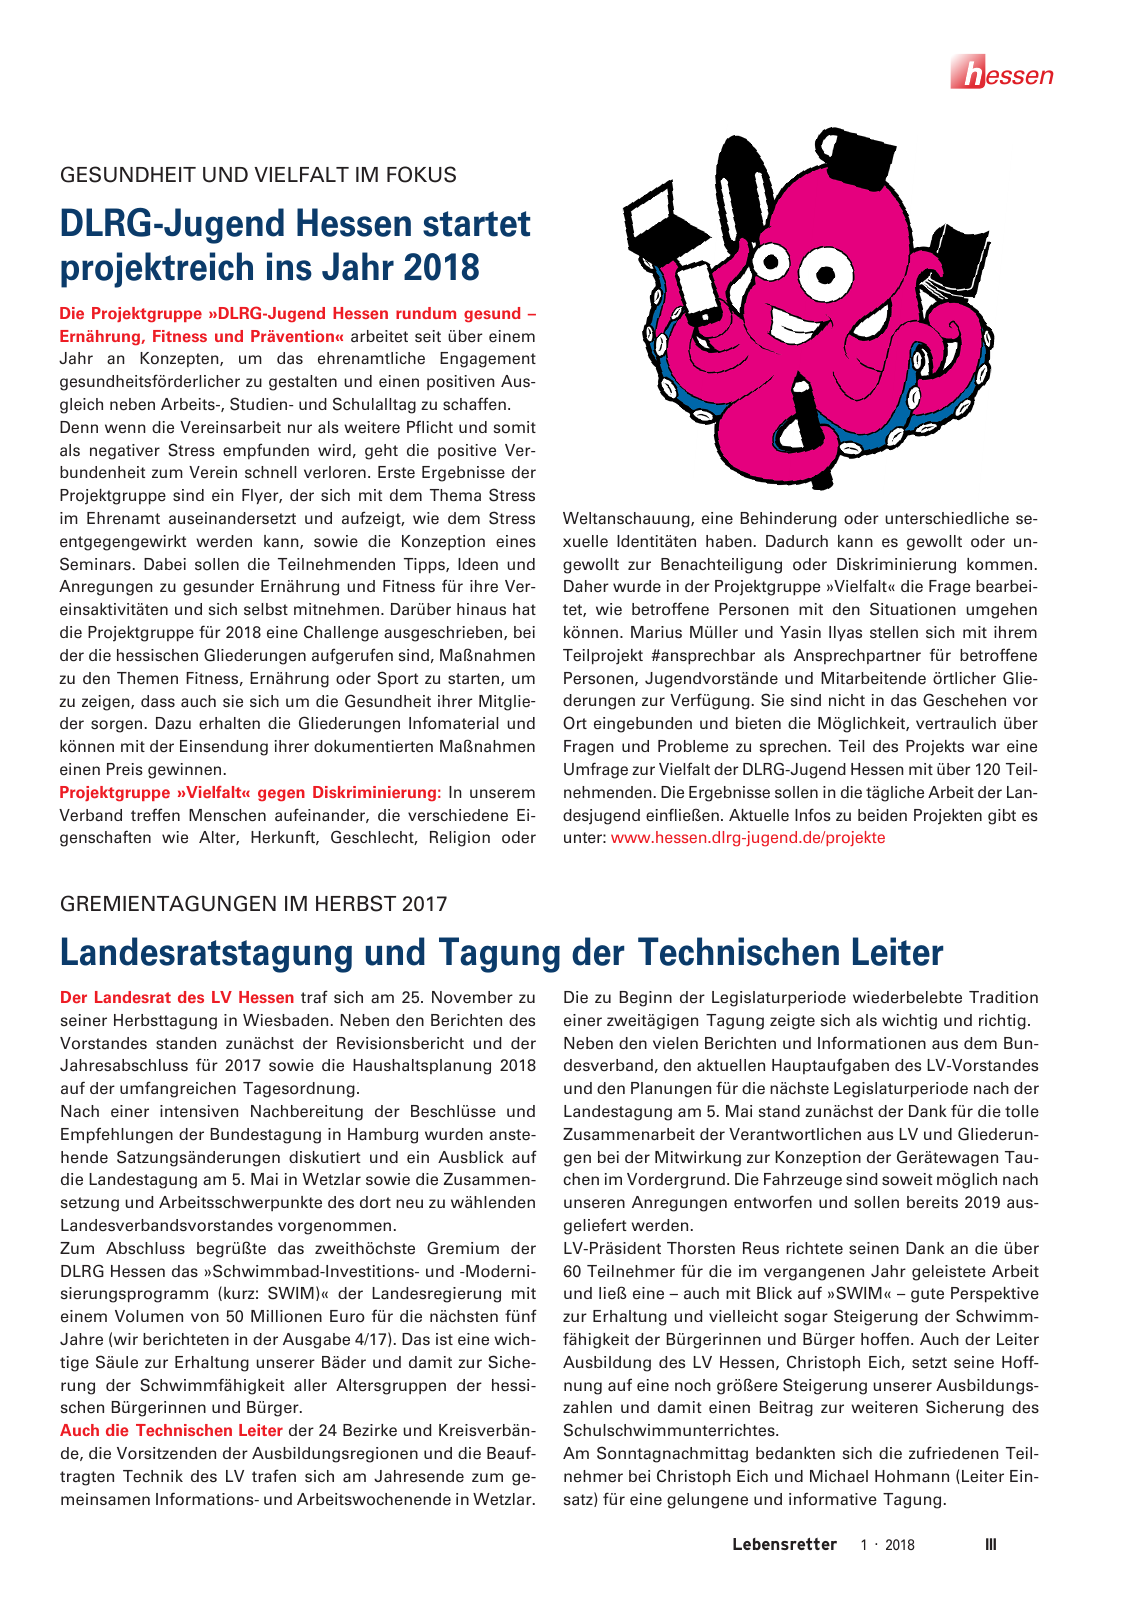 Vorschau Lebensretter 1/2018 - Regionalausgabe Hessen Seite 5